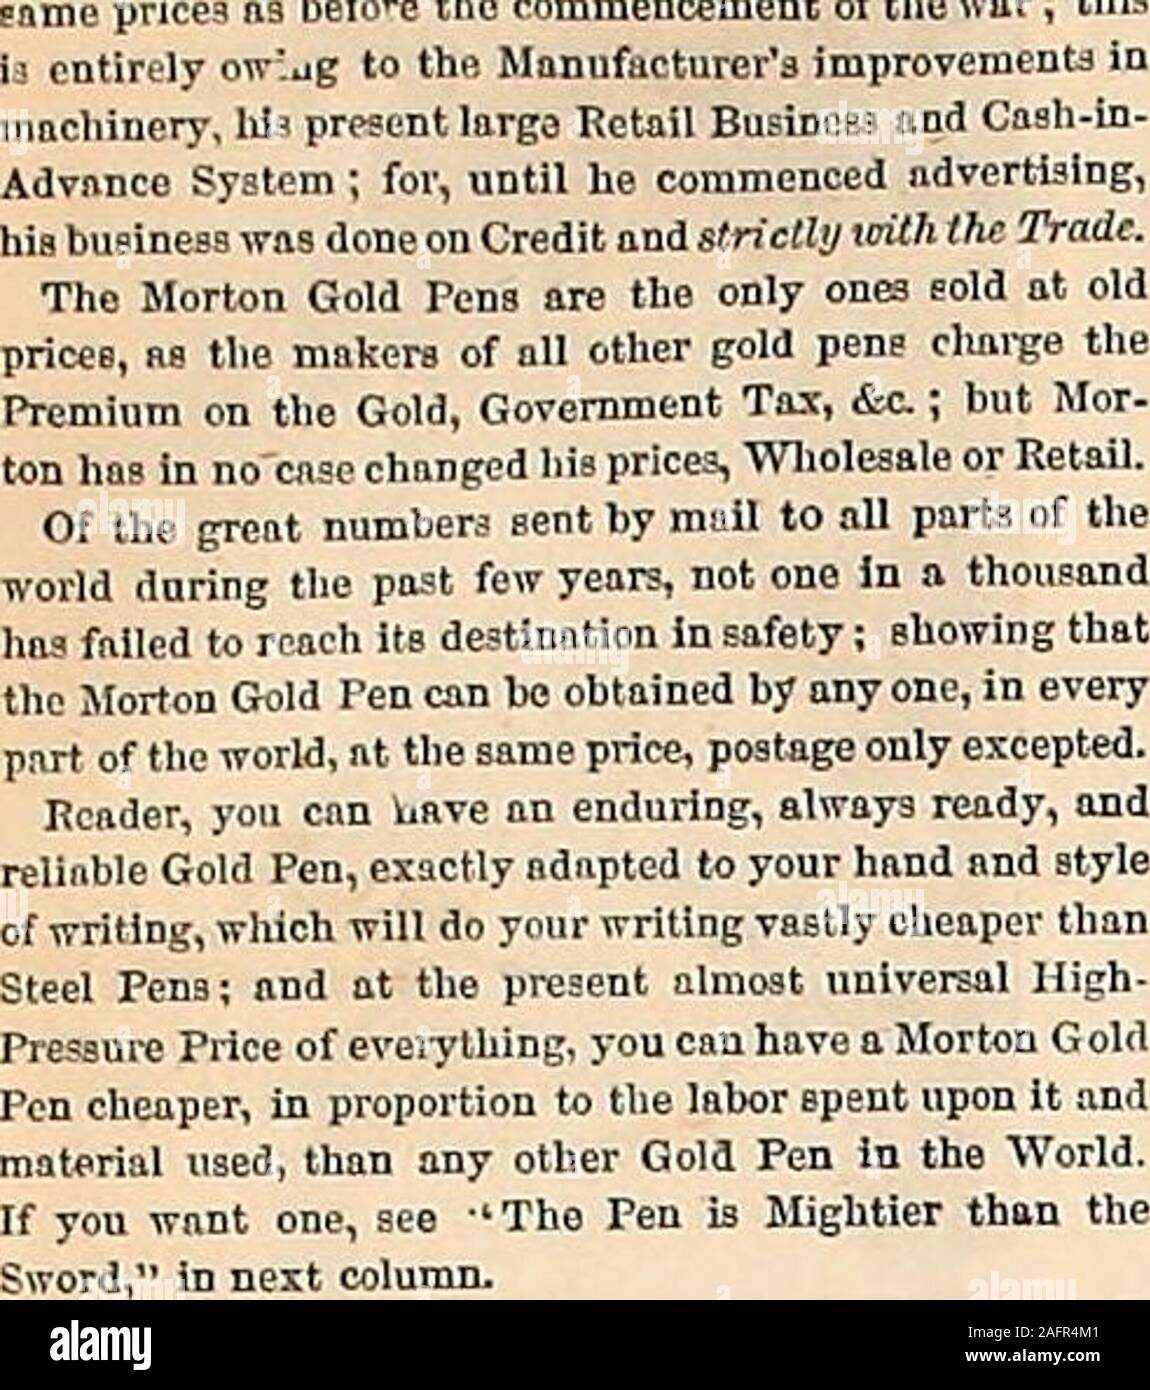 . Harper's Weekly. HARPERS WEEKLY. [2. Januar 1864. Werbung. Mortons Gold Stifte sind jetzt verkauft die nt. Bartletts Noodle Factory, "Die deringer Pistole. TIFFANY & Co.,550 und 552 Broadway. New York,.. vl. Ich Li1i, Tl, c ir [i r n] 1 i, in:. ut: Ich.,. nvr 1-.r^:;,/! Amerikanische Uhren für Soldaten reduzieren AX-0 PEICES - amerikanische Uhren für Amerikaner! ? Y" t, i,. e.-: r&gt; r^- ly de-: ver erwartete Zeit w Spulen & AFPLETON, Vertreter der amerikanischen Firma zu halten. 182 Broadway, W. Y. Kavallerie und Artillerie. Stockfoto